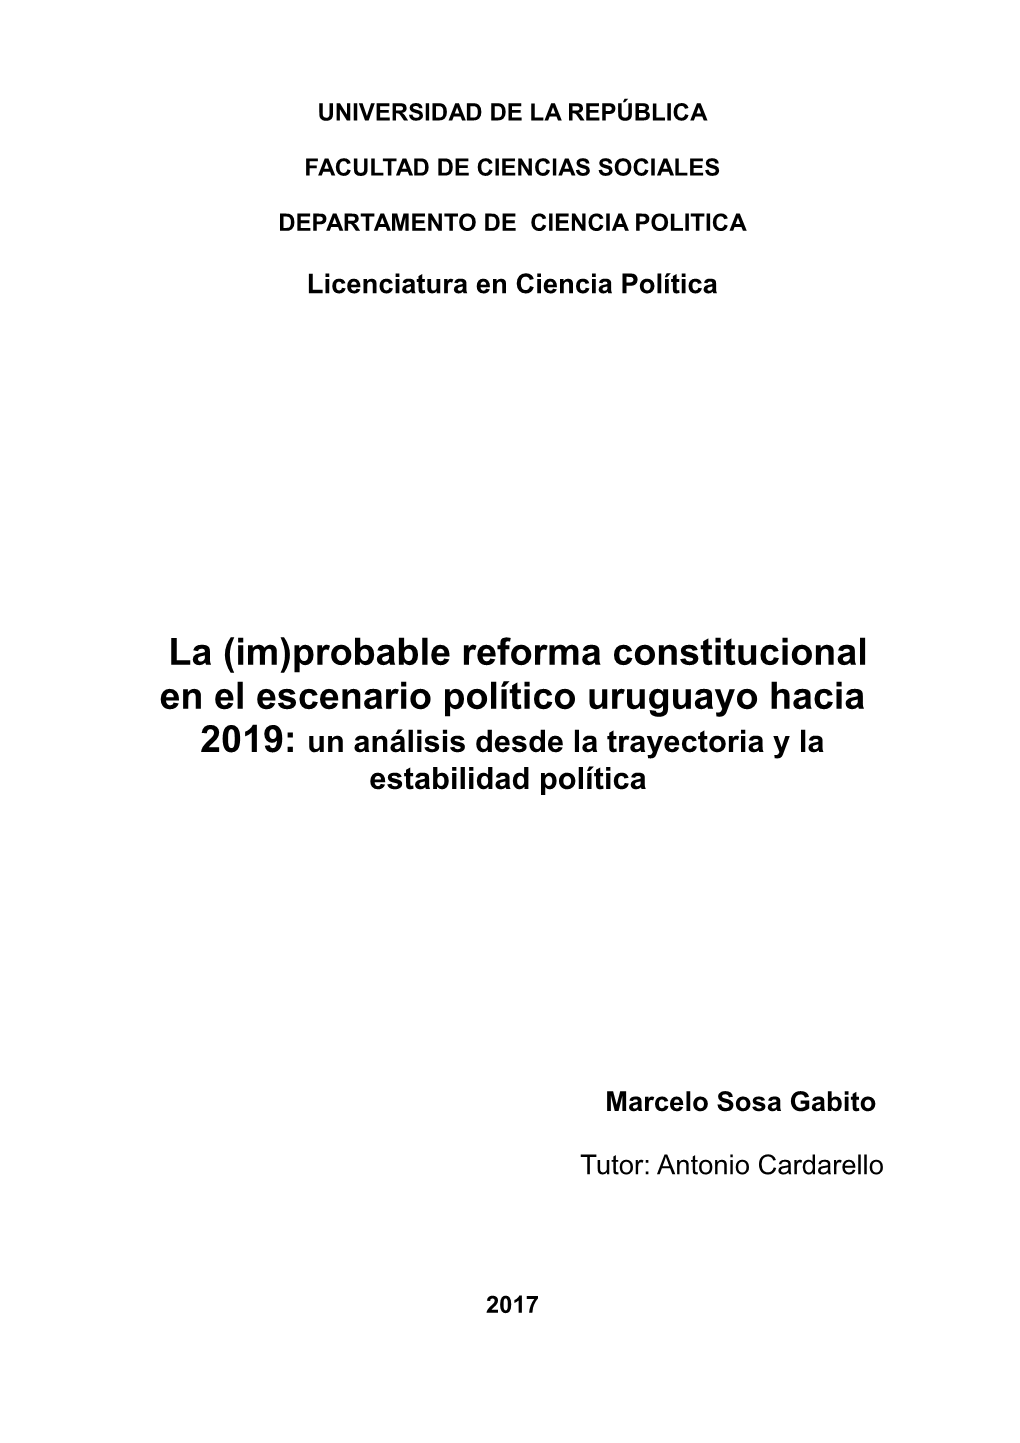 Probable Reforma Constitucional En El Escenario Político Uruguayo Hacia 2019: Un Análisis Desde La Trayectoria Y La Estabilidad Política